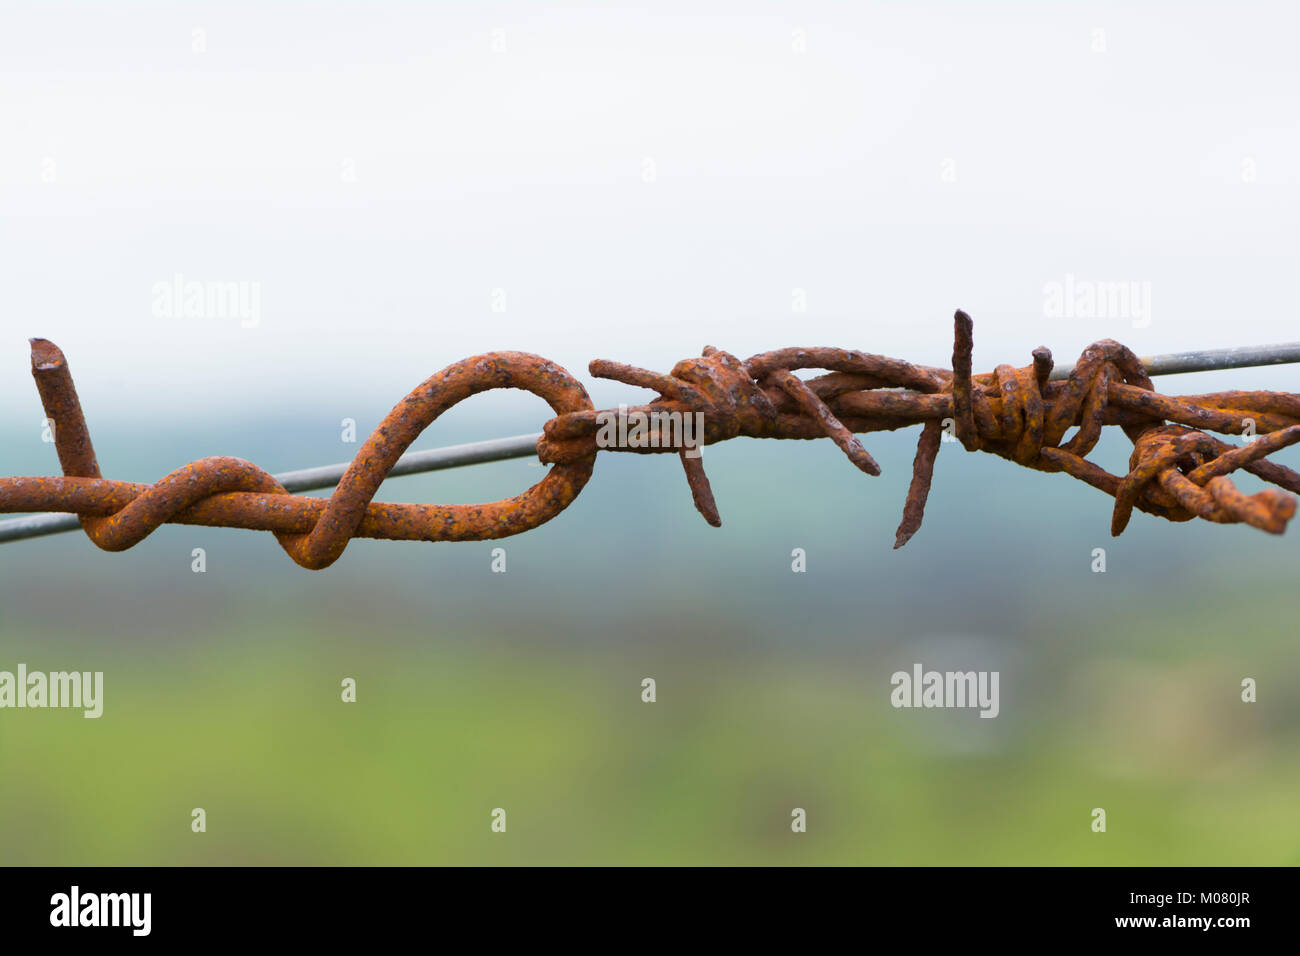 Résumé : Le fil de clôture des bretzels, faite par les paires torsadées noeuds et des barbelés sur la clôture rurale. Prises à la vallée de l'EDAN Lookout, en Australie du Sud. S Banque D'Images